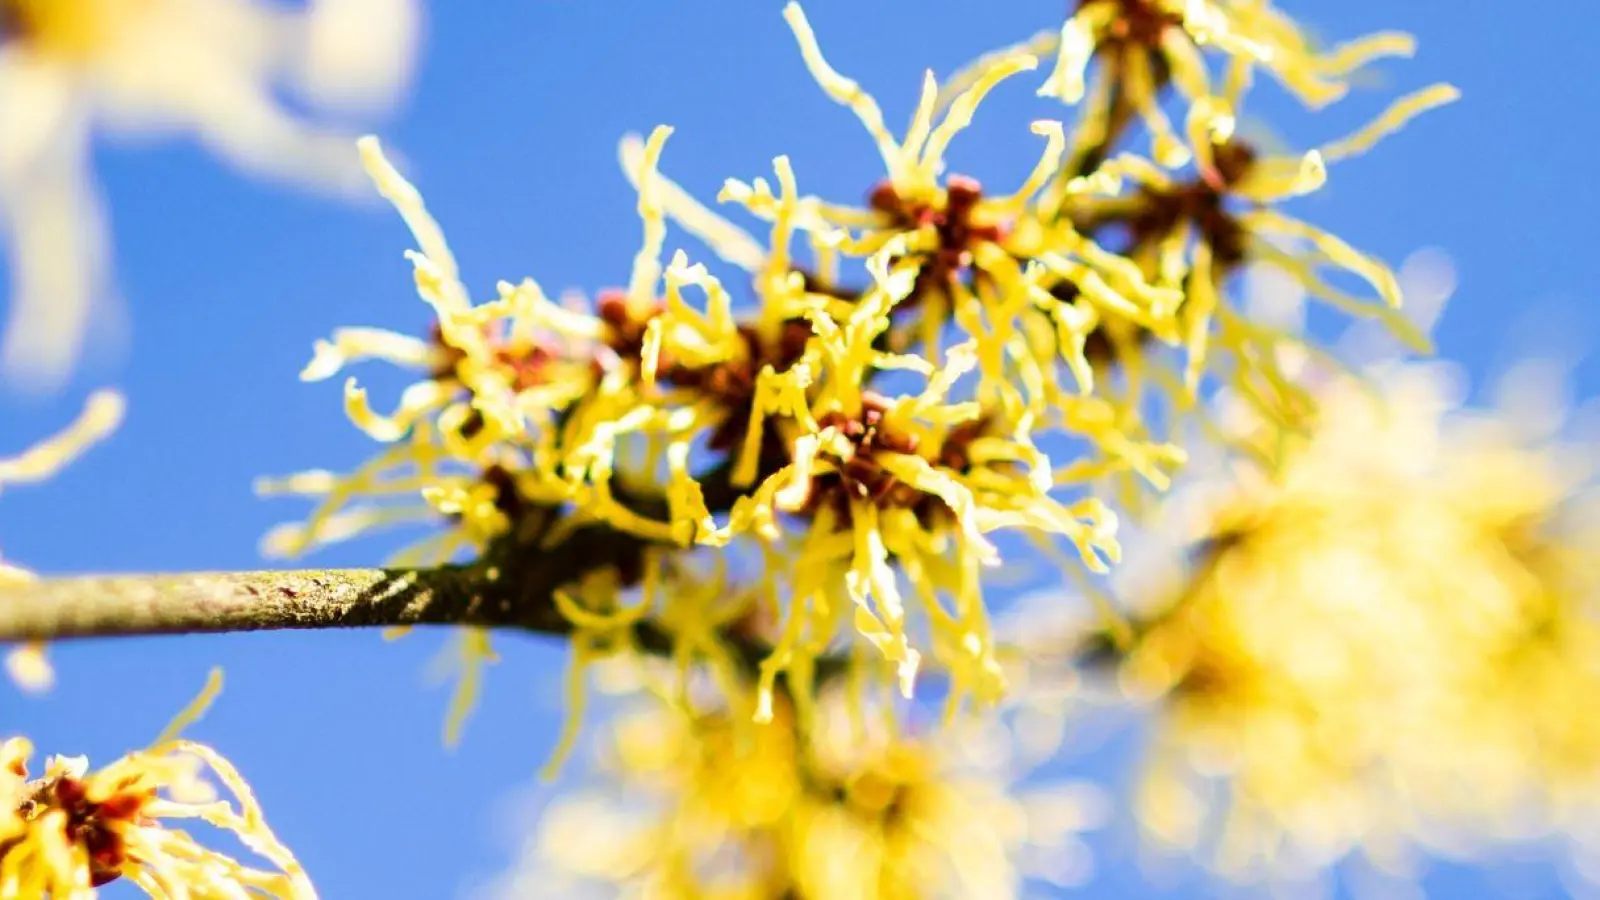 Die Chinesische Zaubernuss (Hamamelis mollis) begeistert schon früh im Jahr mit leuchtend gelben Blüten. Die Blütezeit reicht in Mitteleuropa von Januar bis März. (Foto: Marcel Kusch/dpa)